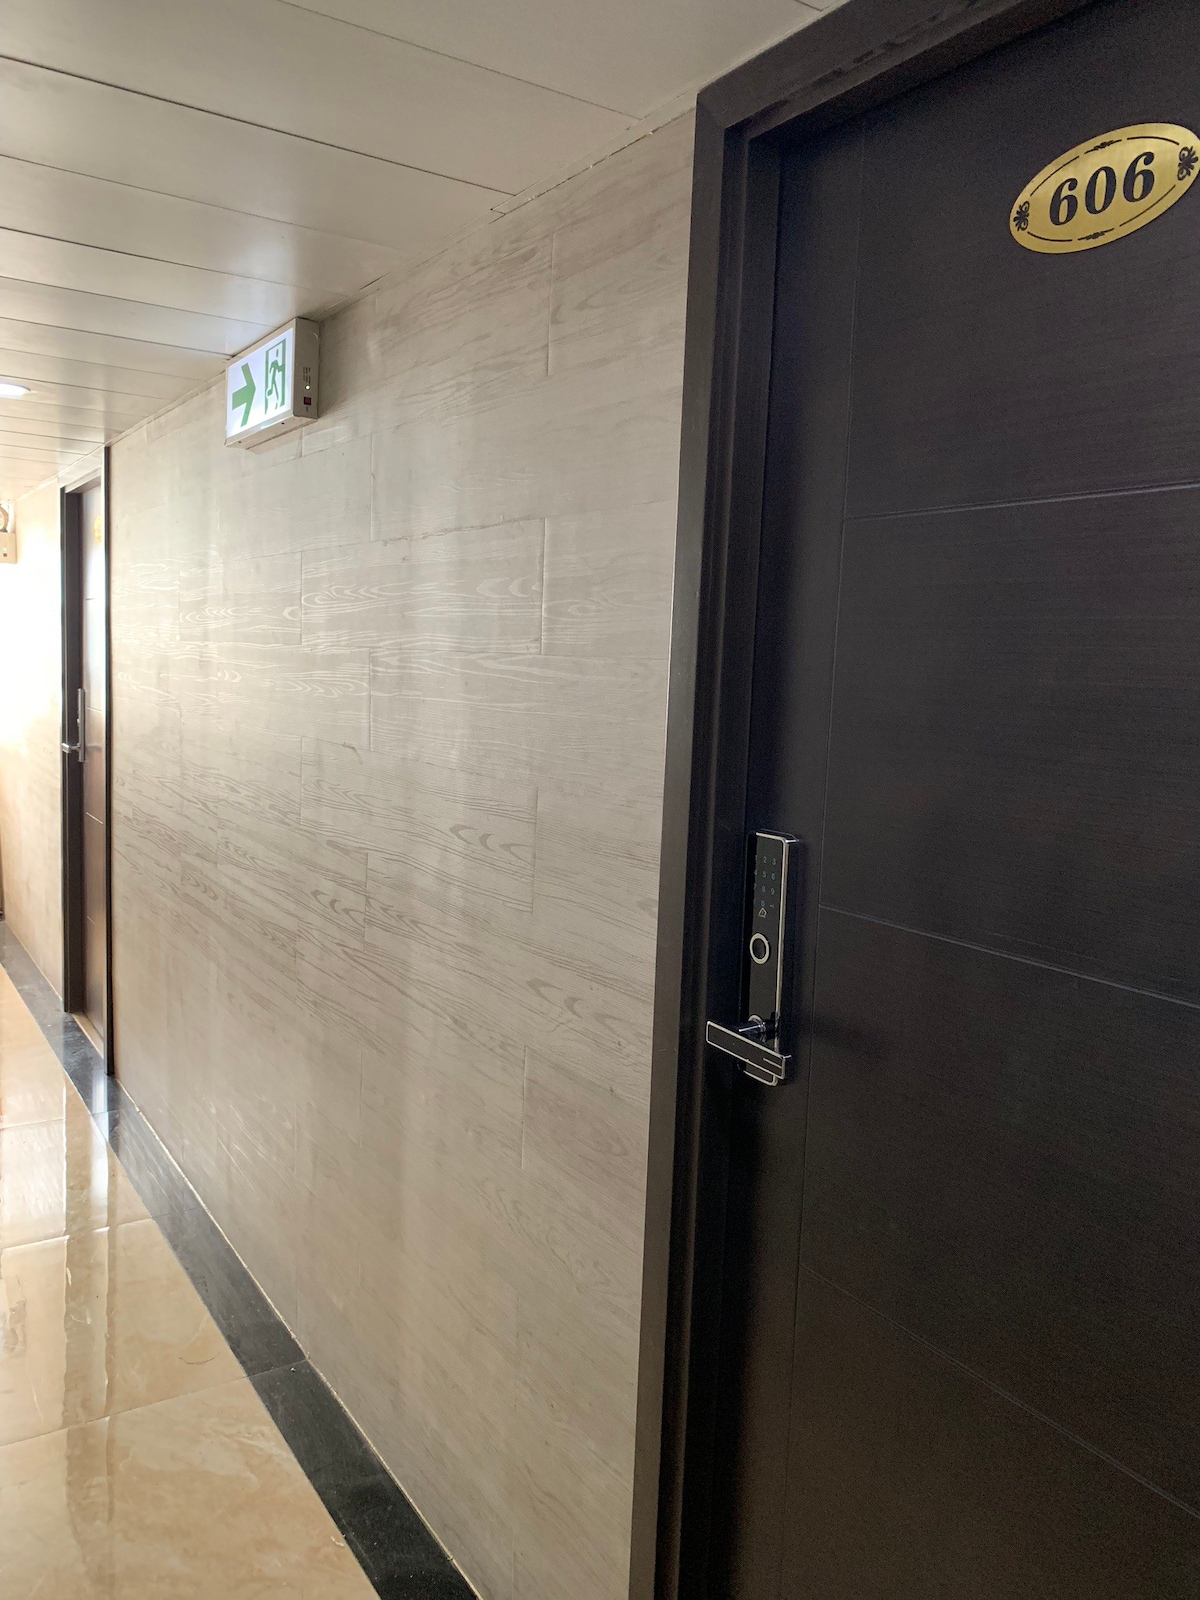 香港全新装修尖沙咀高铁站宾馆606房